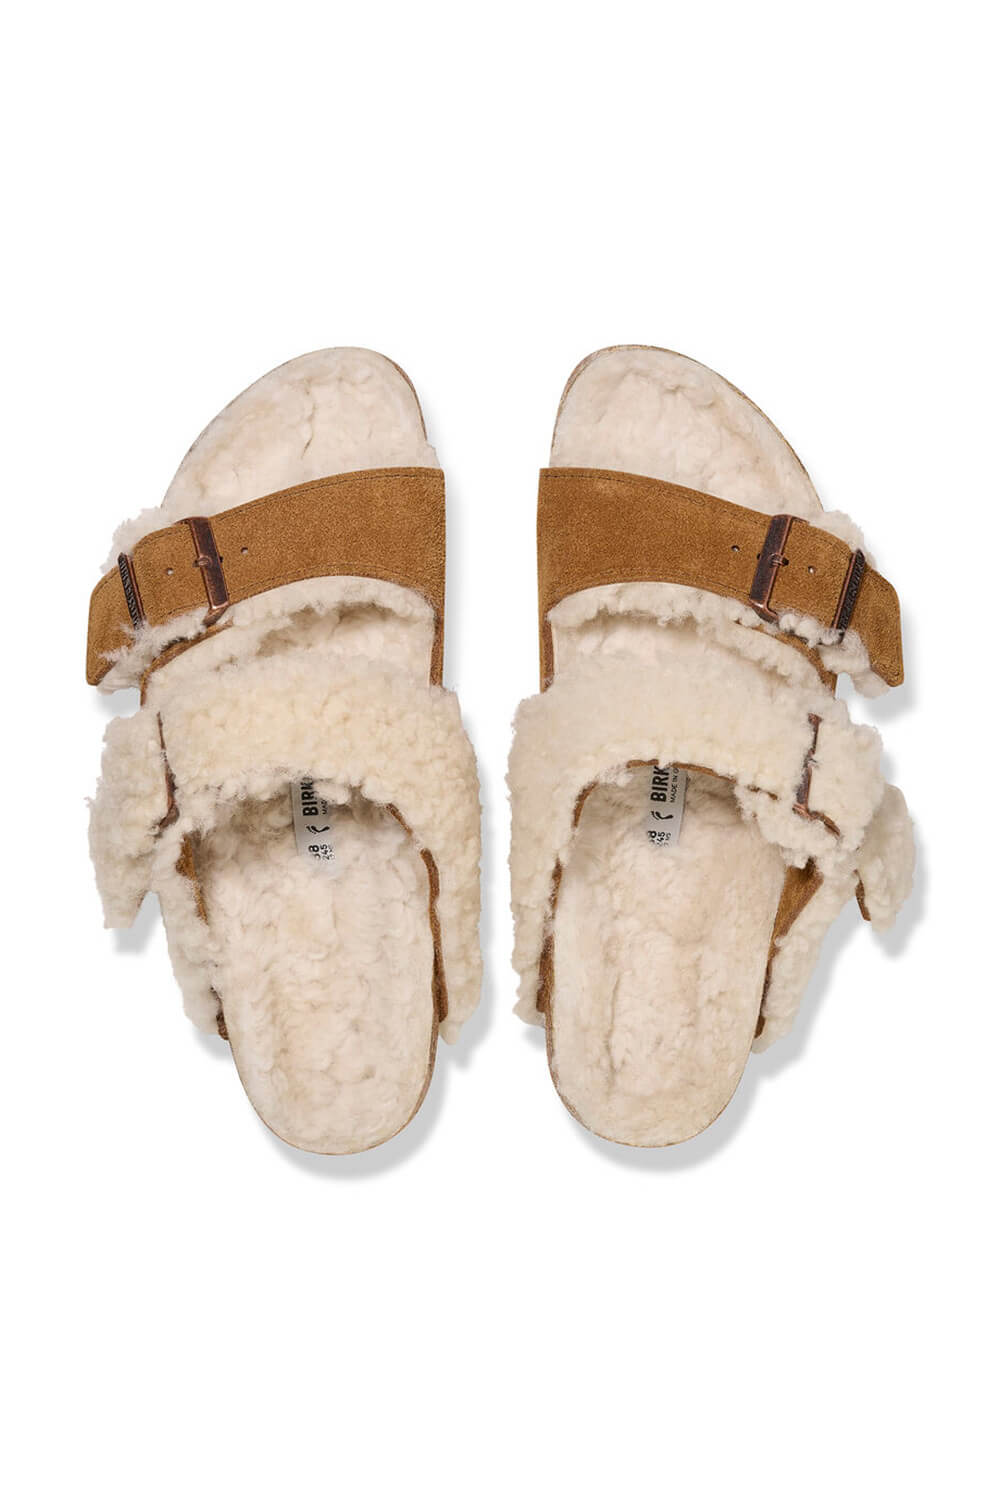 Birkenstock Arizona Teddy Split Leather Shearling Sandals for Women in –  Glik's